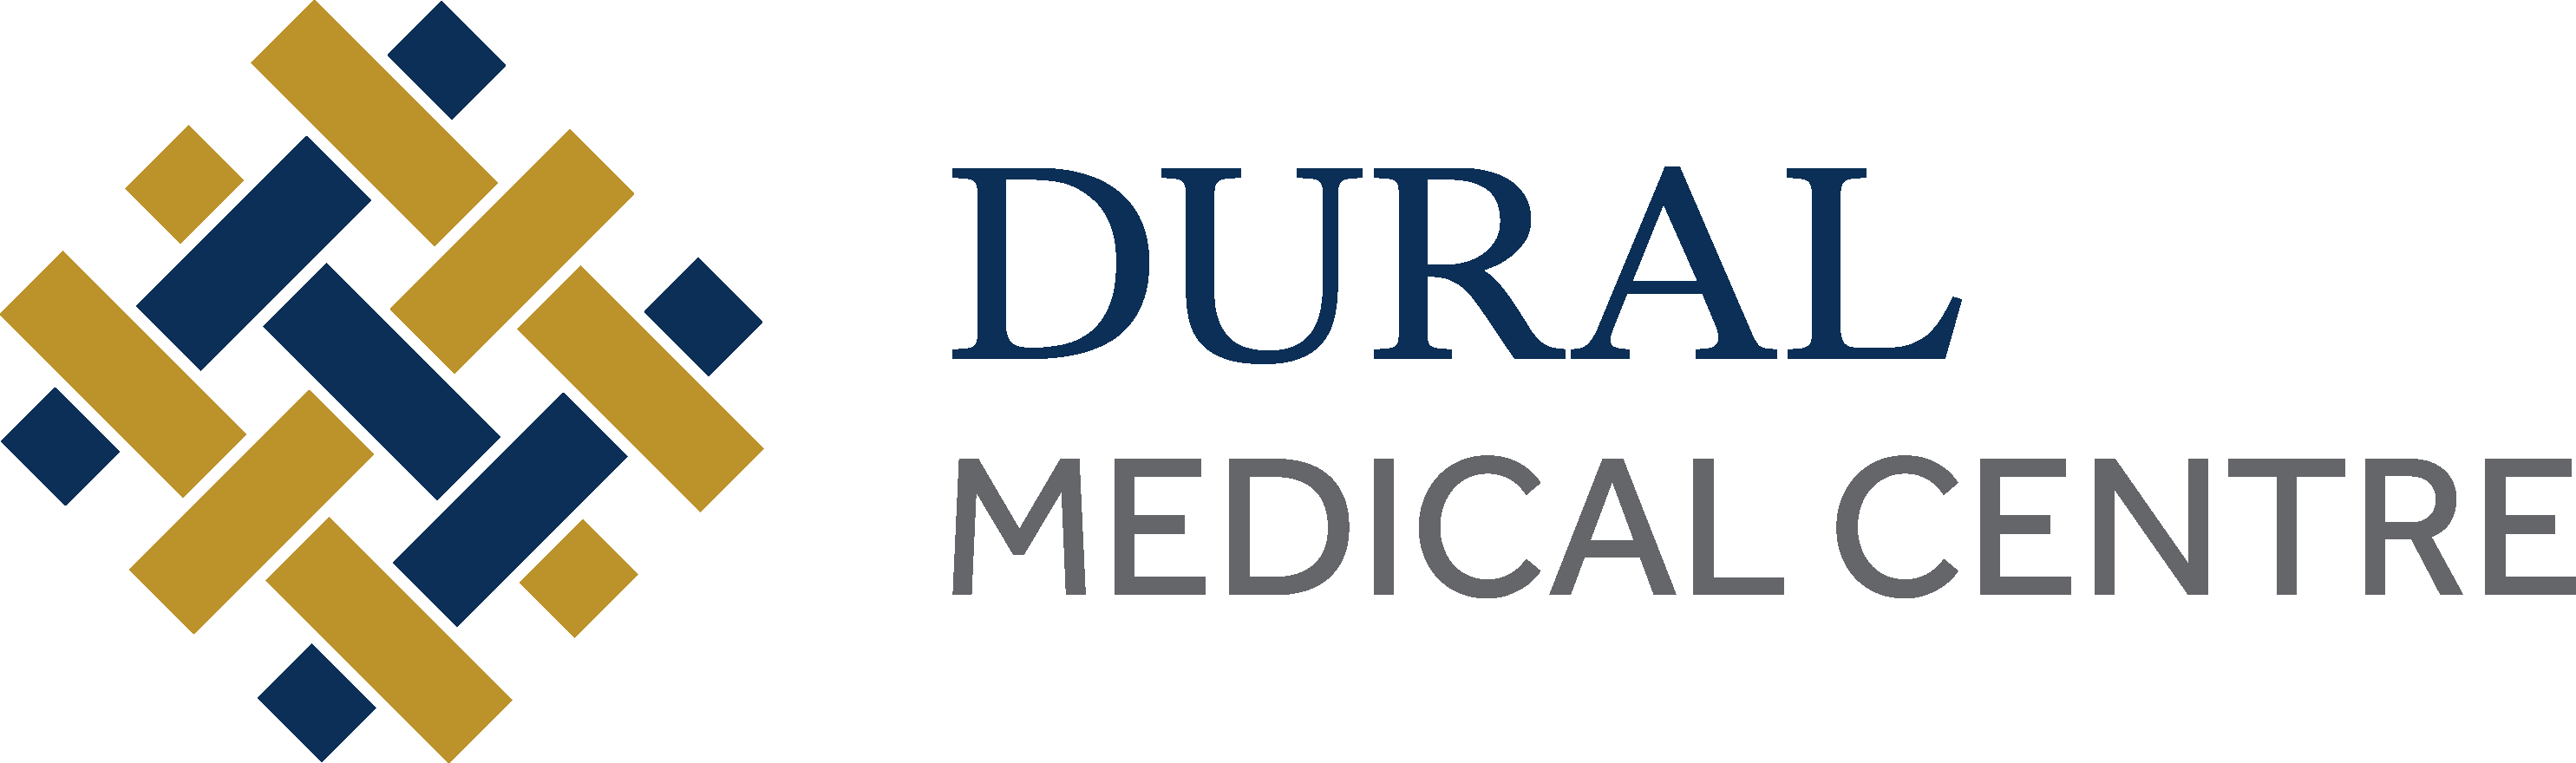 Dural Medical Centre